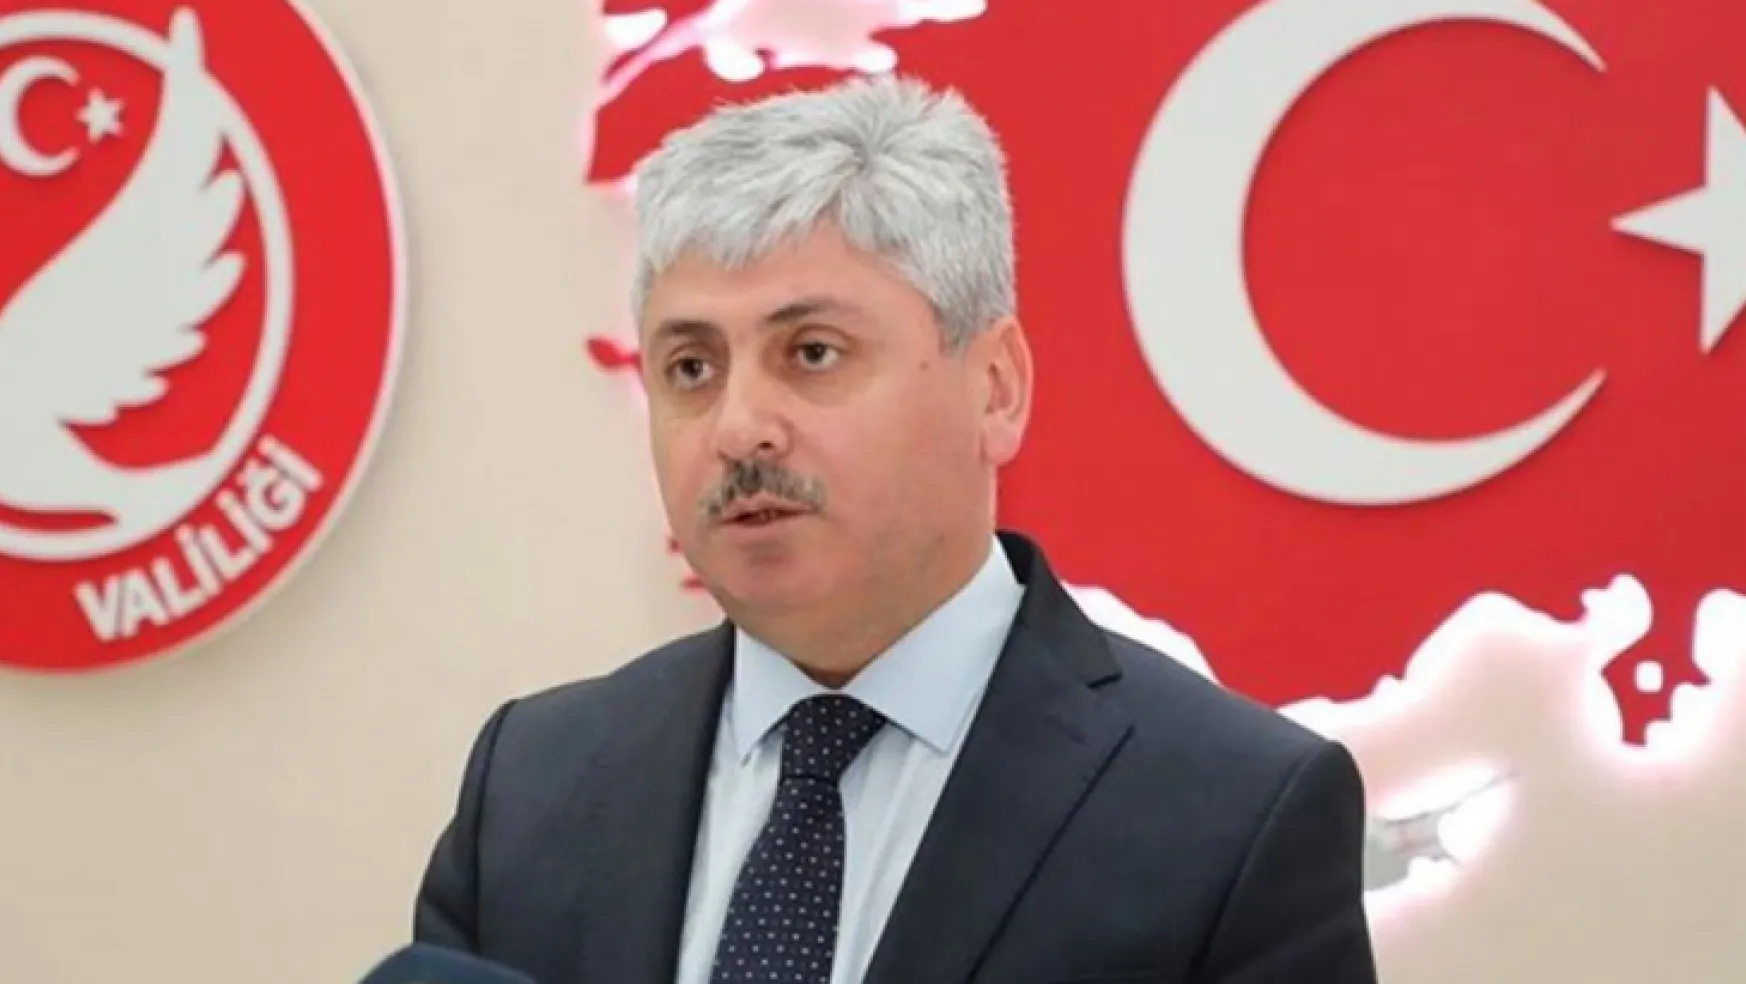 Hatay Valisi Rahmi Doğan'dan adaylık istifası